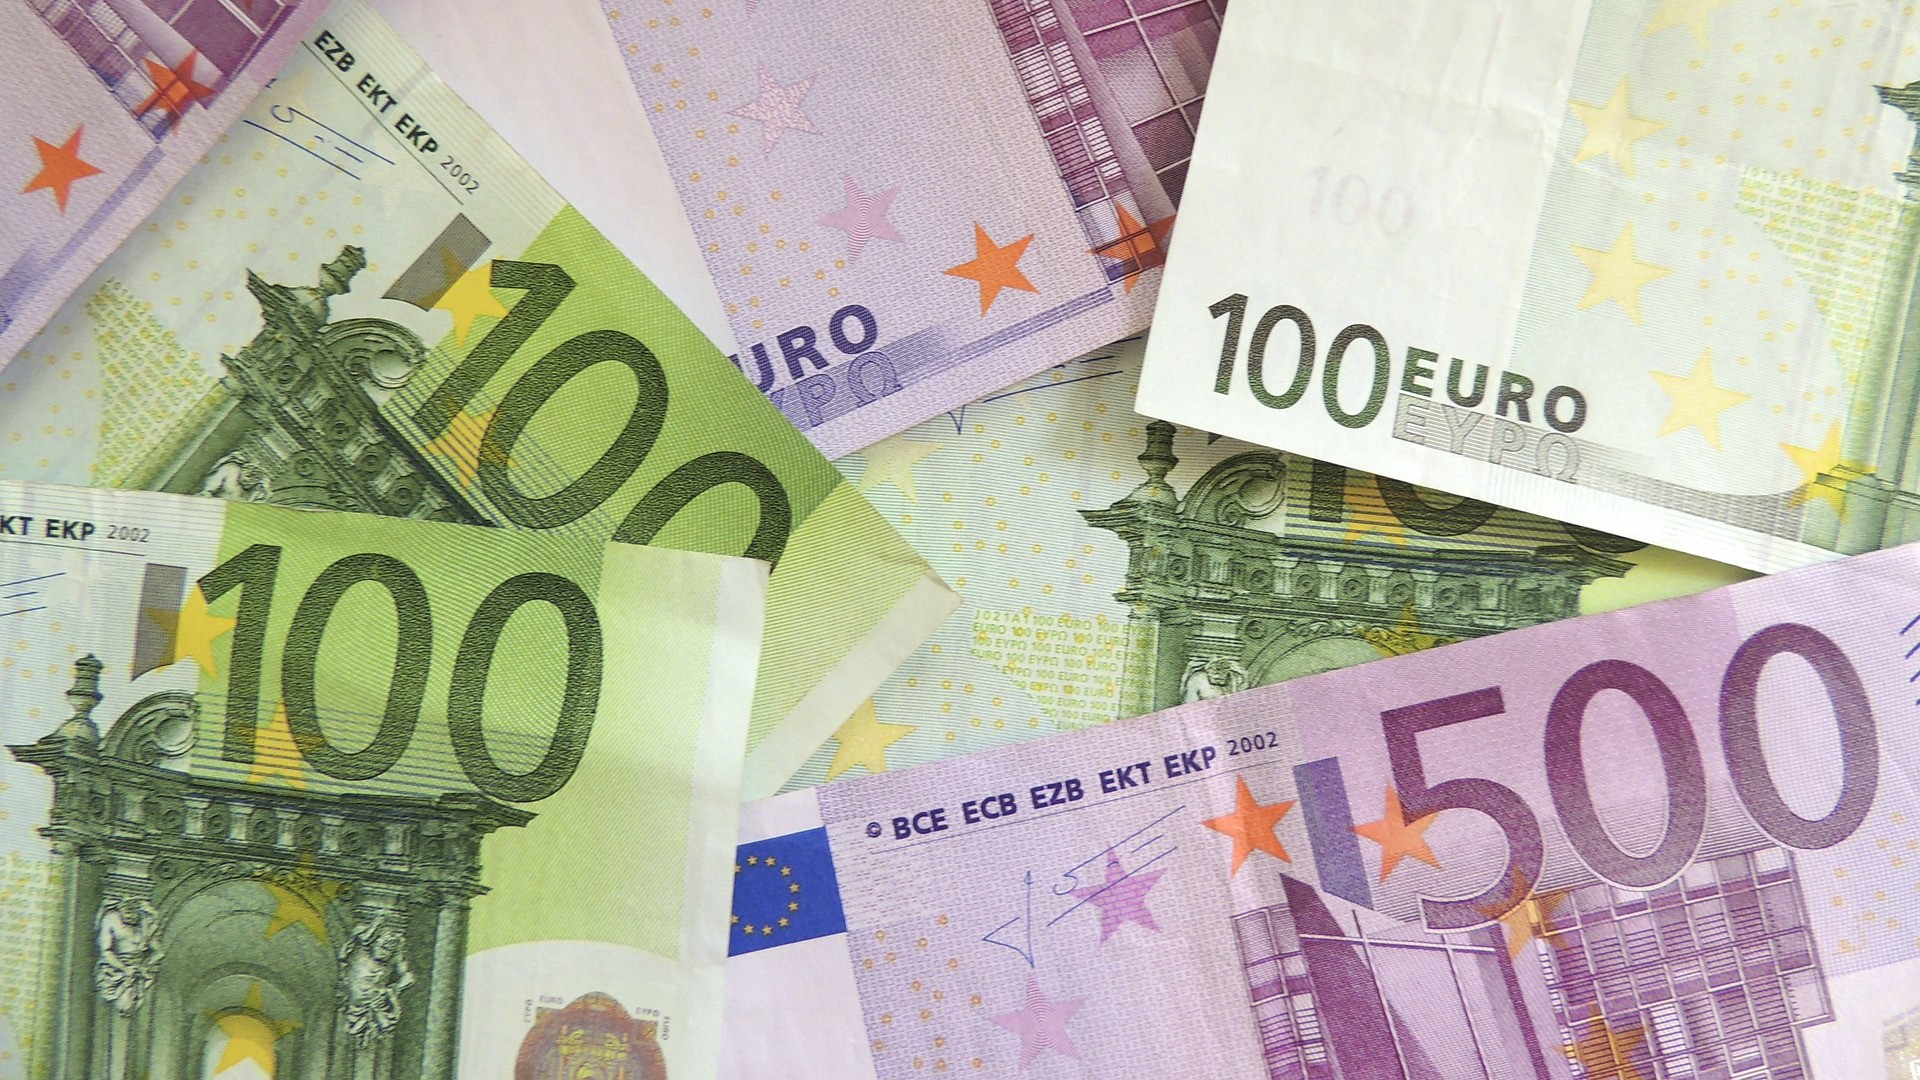 Euro-Banknoten verschiedener Werte liegen neben- und übereinander.